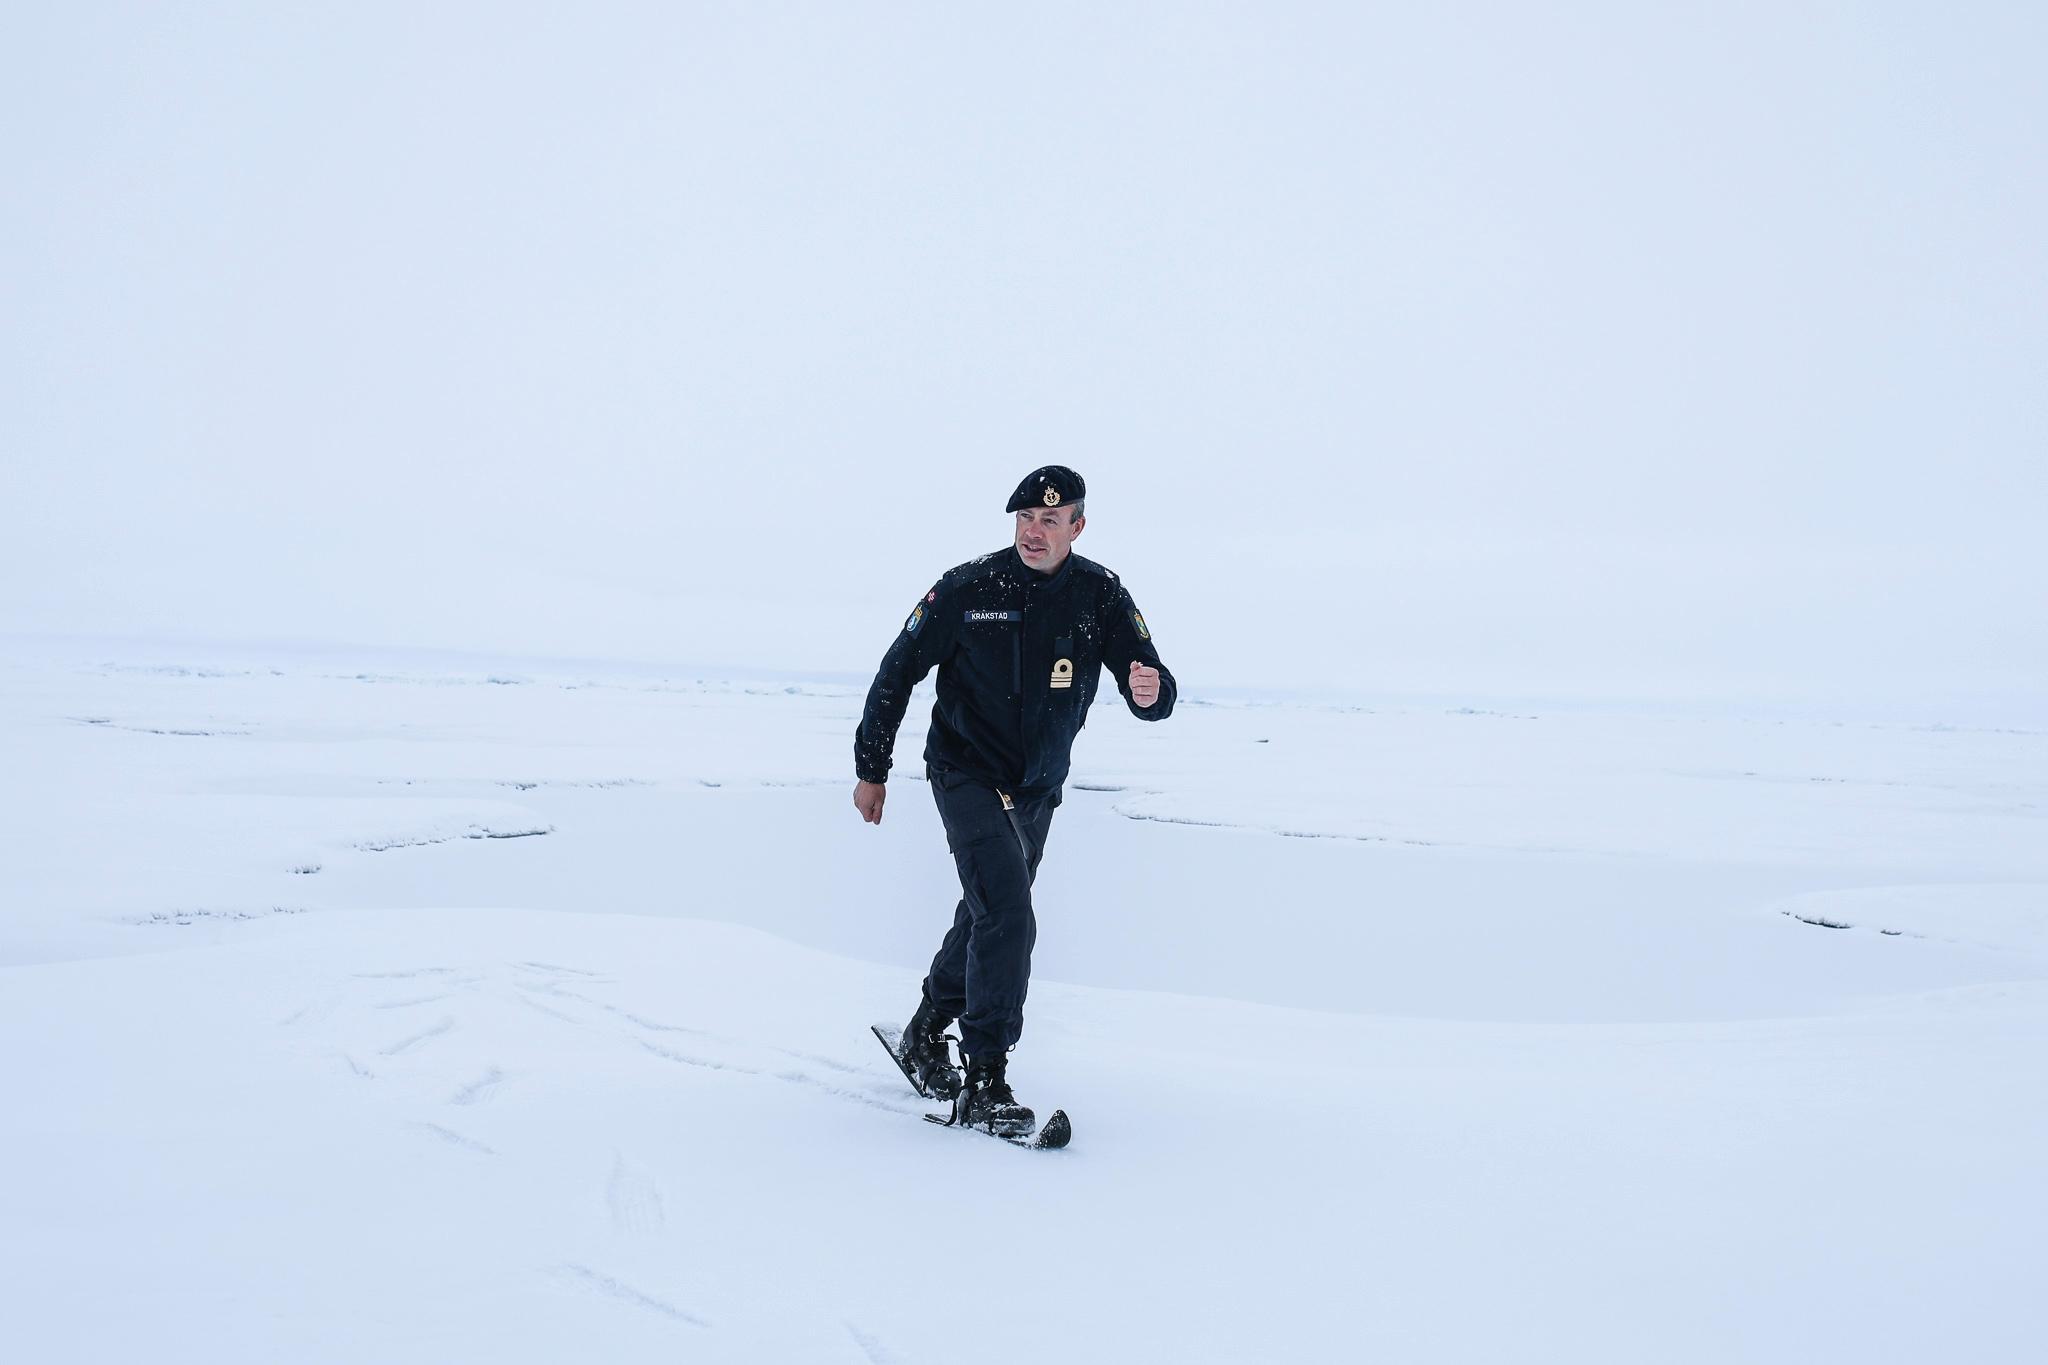 Nestkommanderende på KV Svalbard, Anders Krakstad, benyttet sjansen til å prøve skiene på Nordpolen.